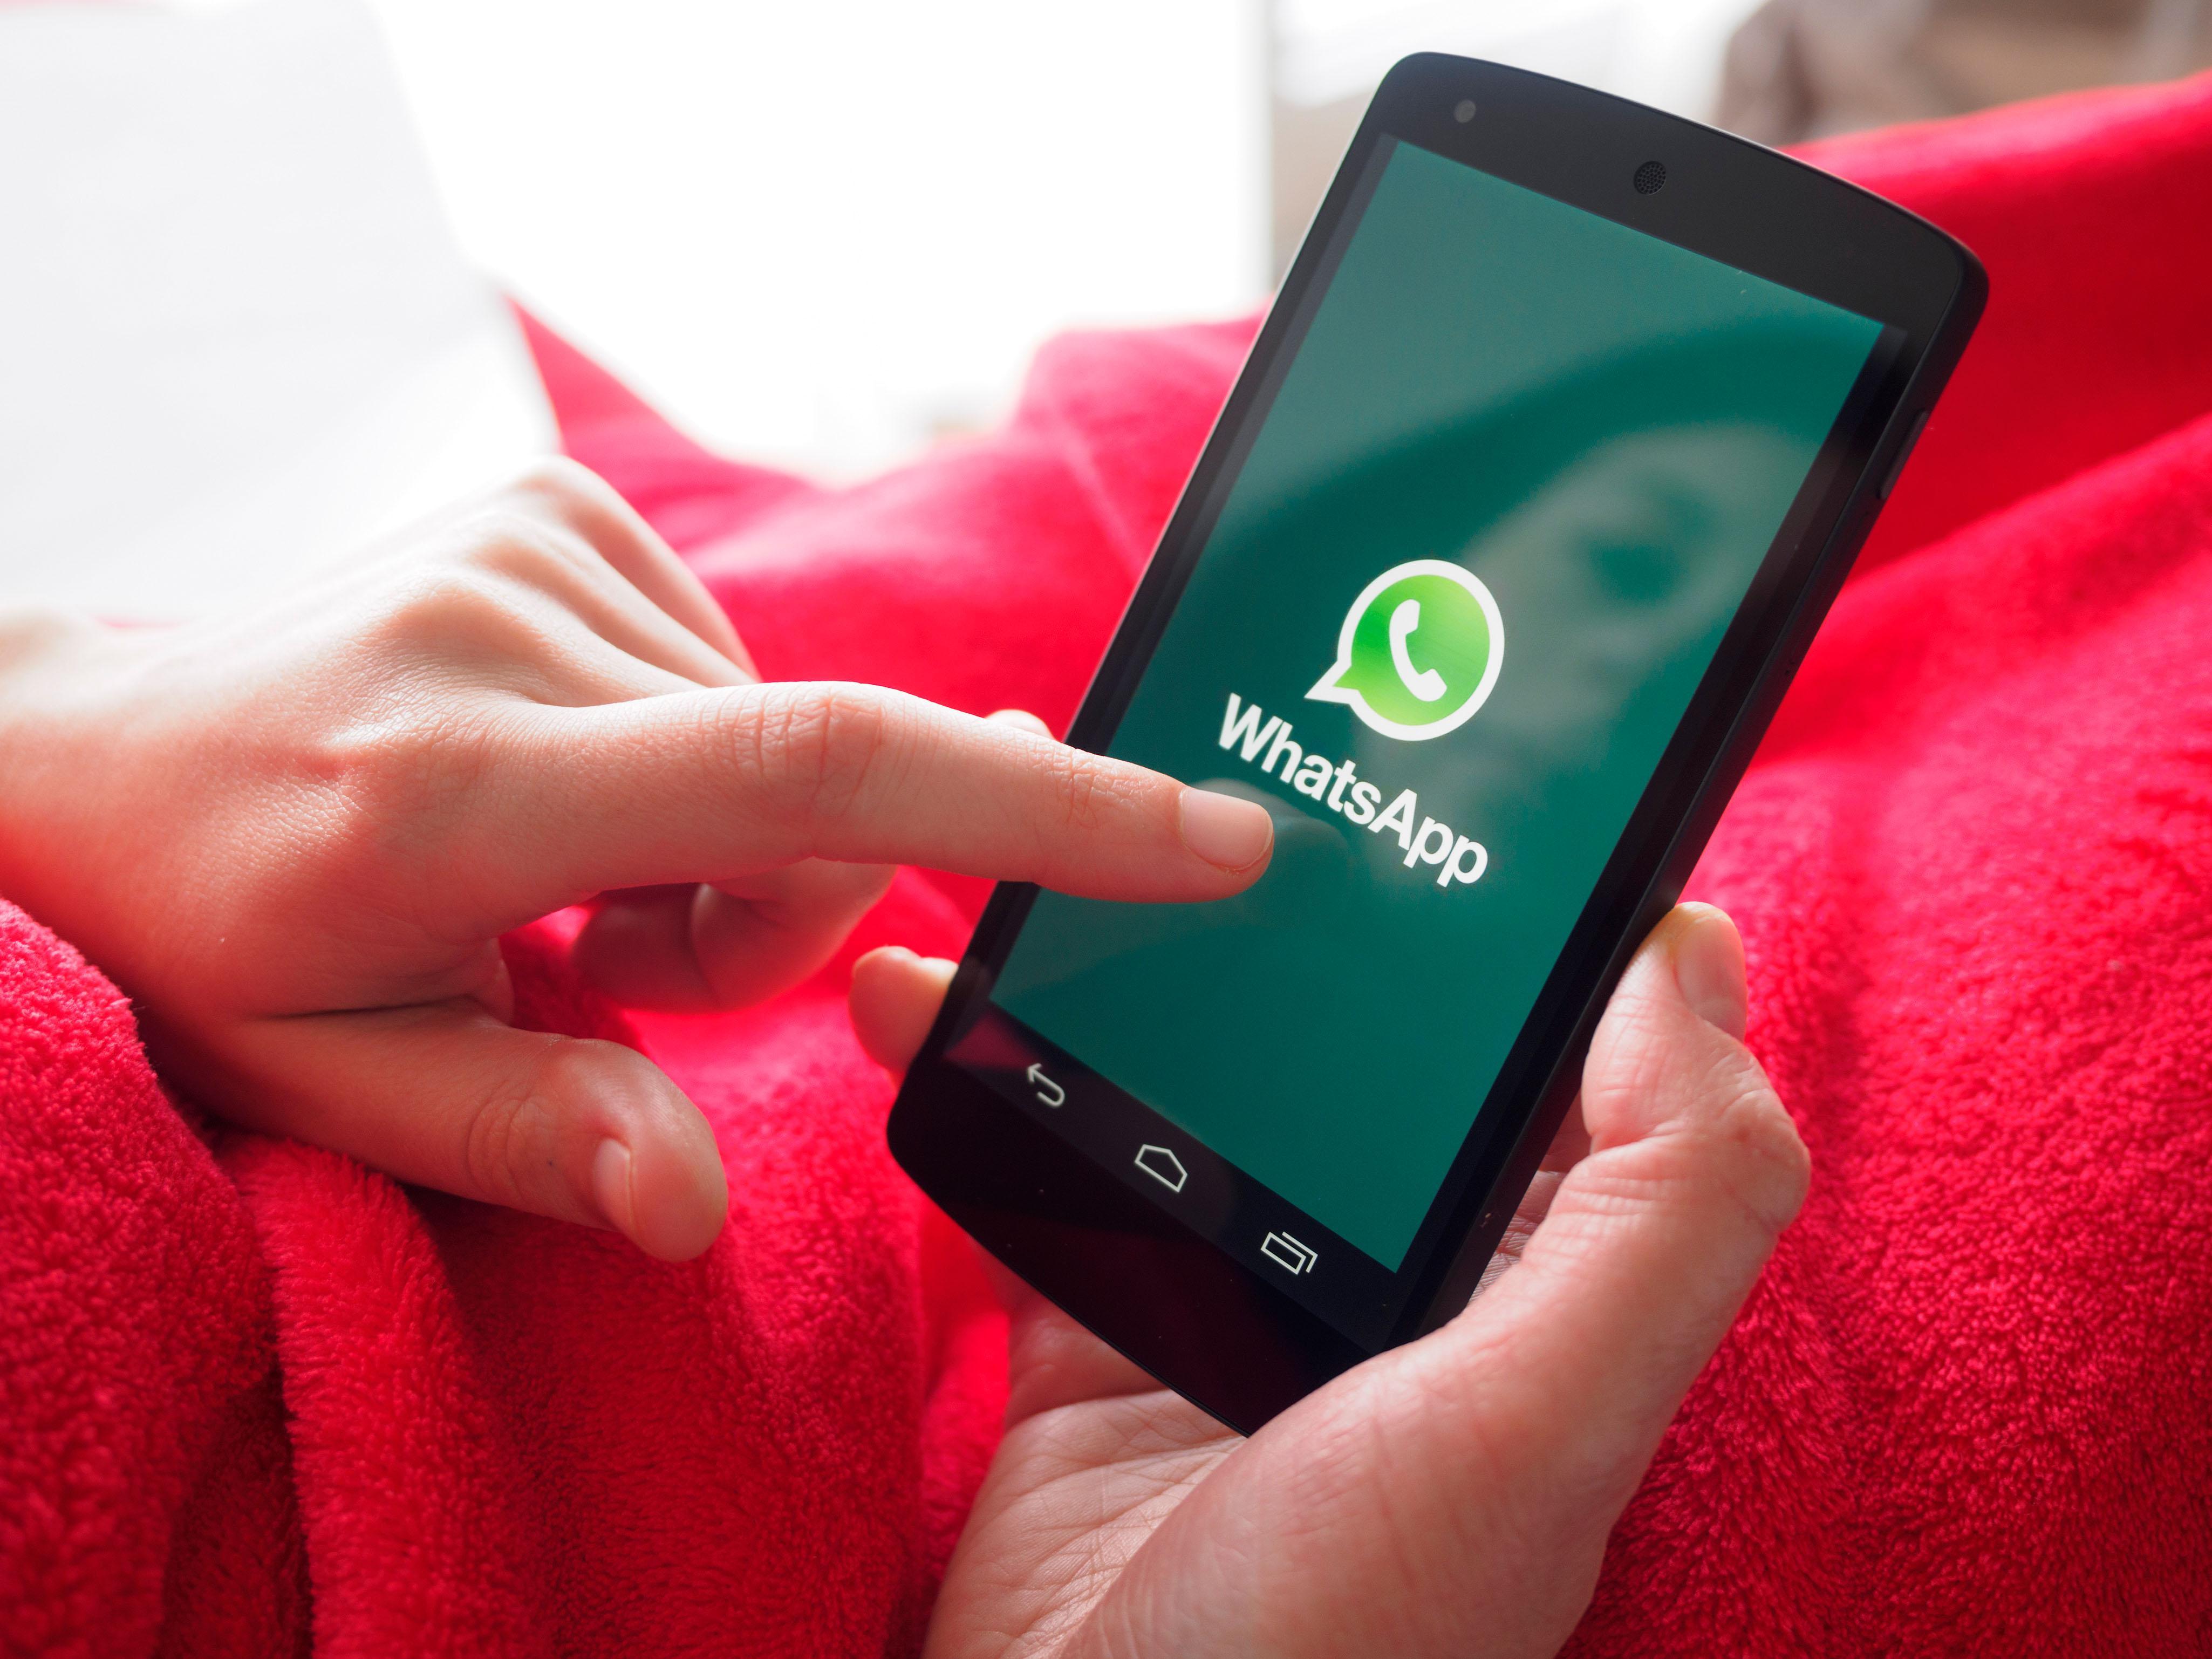  WhatsApp adalah aplikasi perpesanan paling populer di dunia